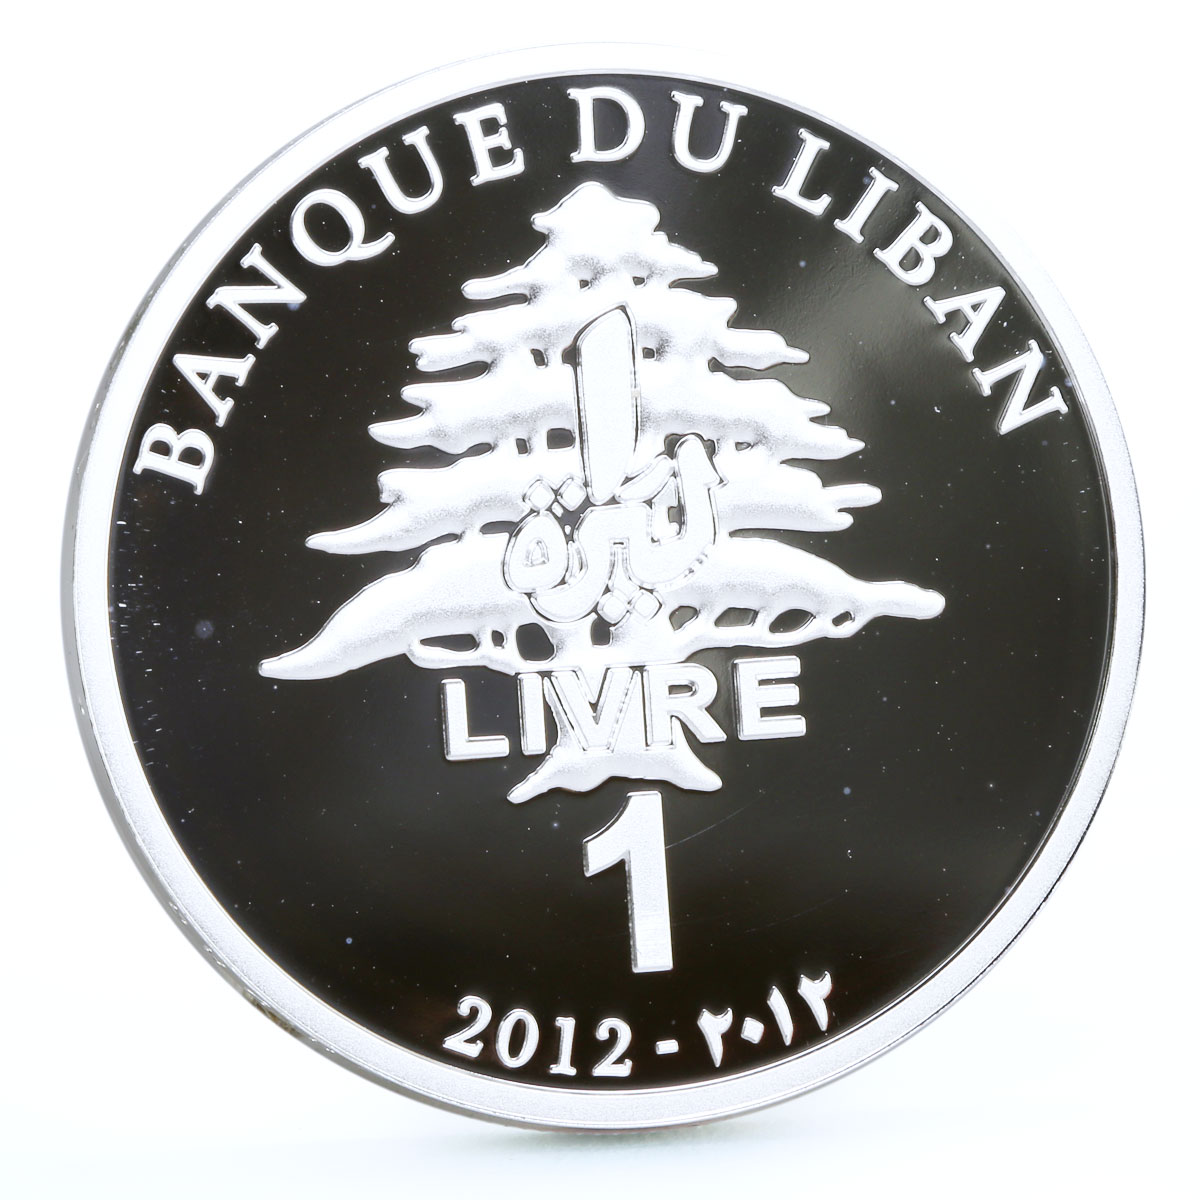 Lebanon 1 livre Writer Amin Maalouf French Academy Cedar Tree silver coin 2012